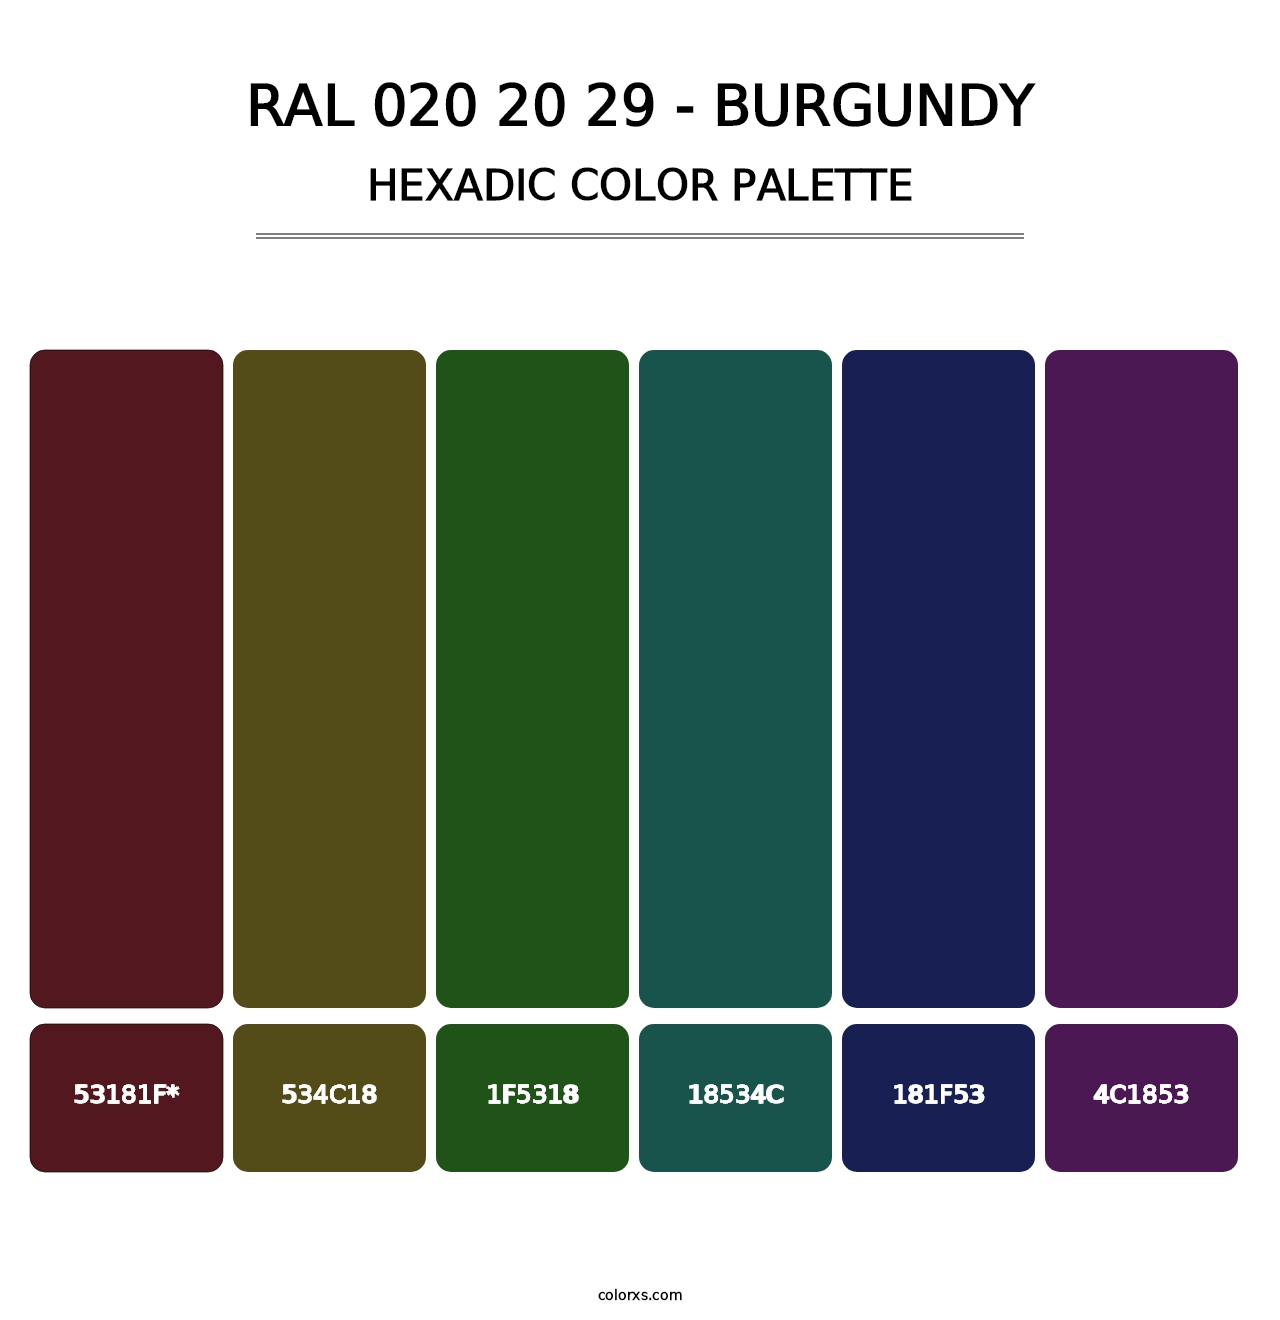 RAL 020 20 29 - Burgundy - Hexadic Color Palette